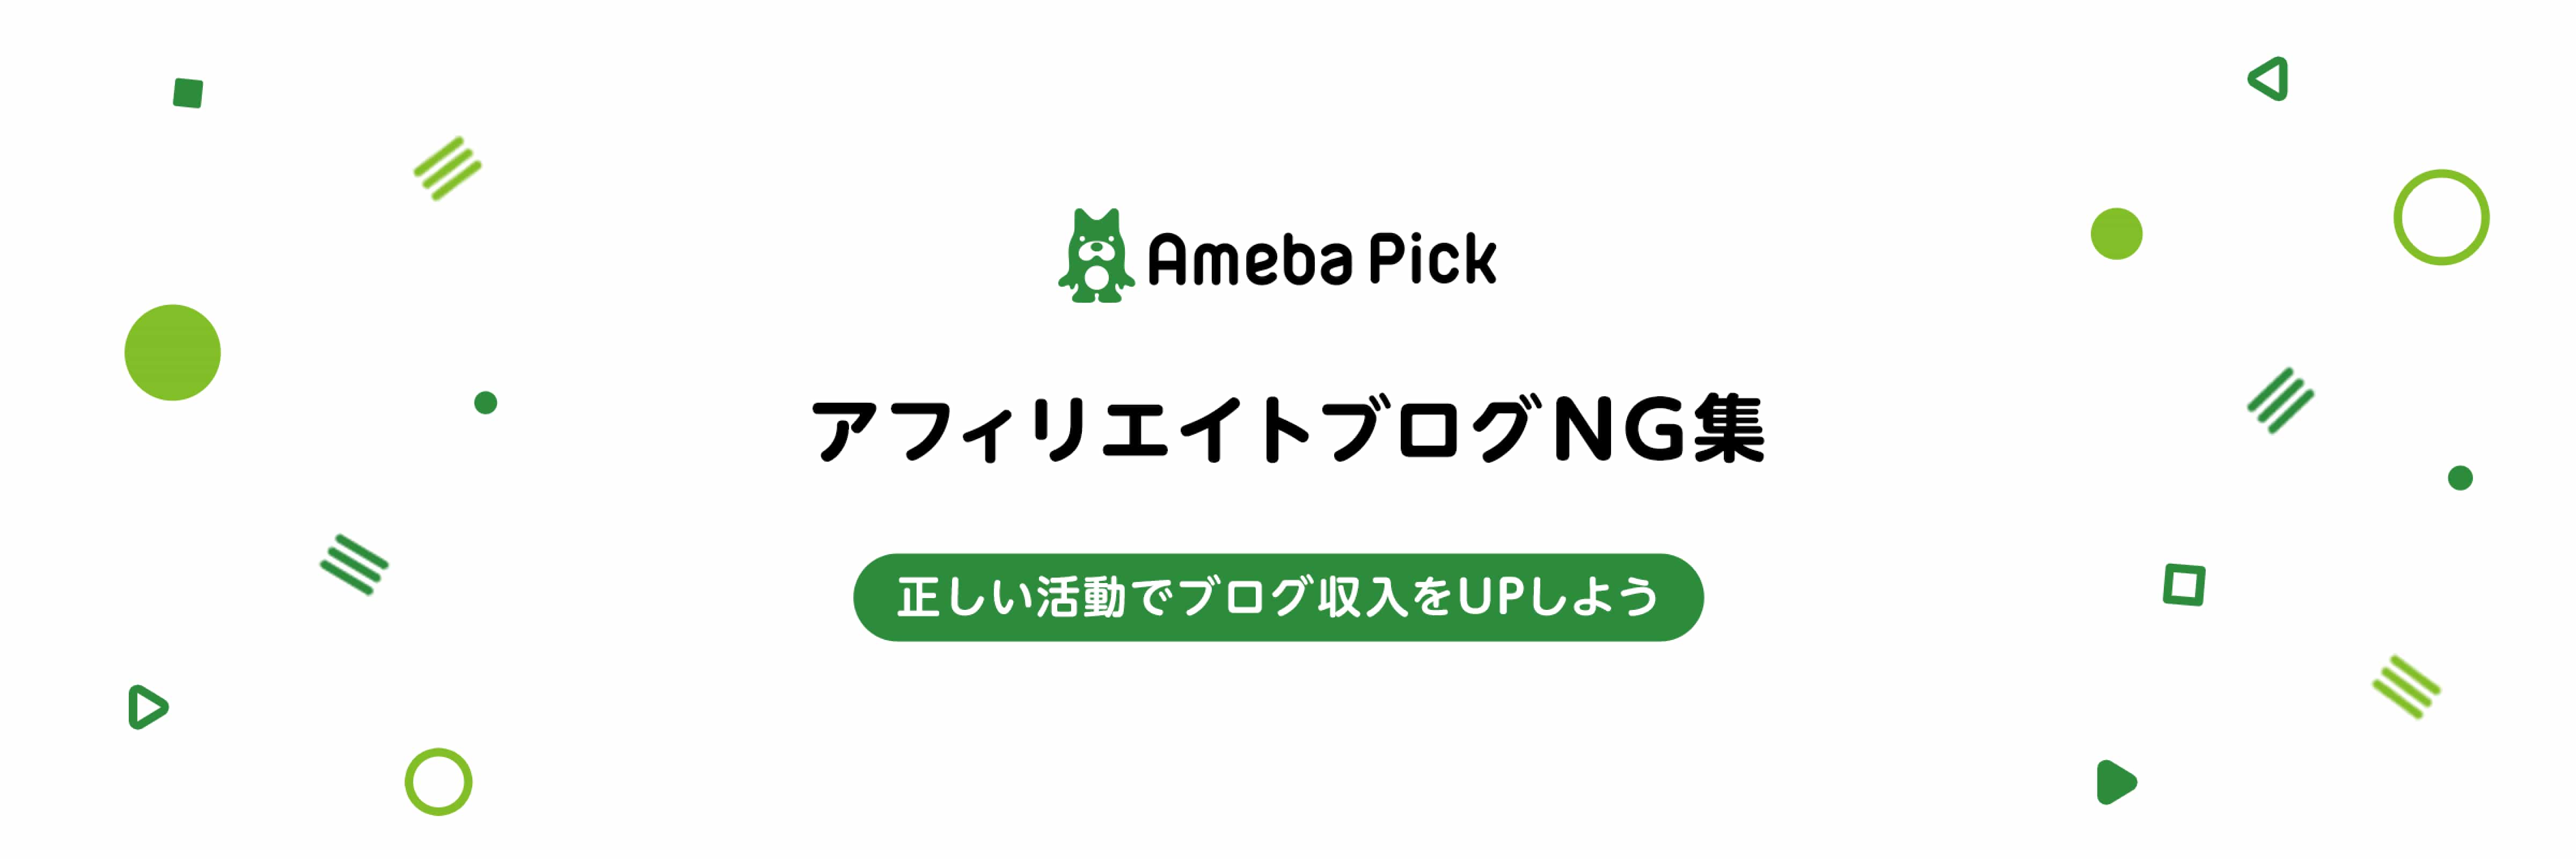 Ameba Pick アフィリエイトブログNG集　正しい活動でブログ収益をアップしよう